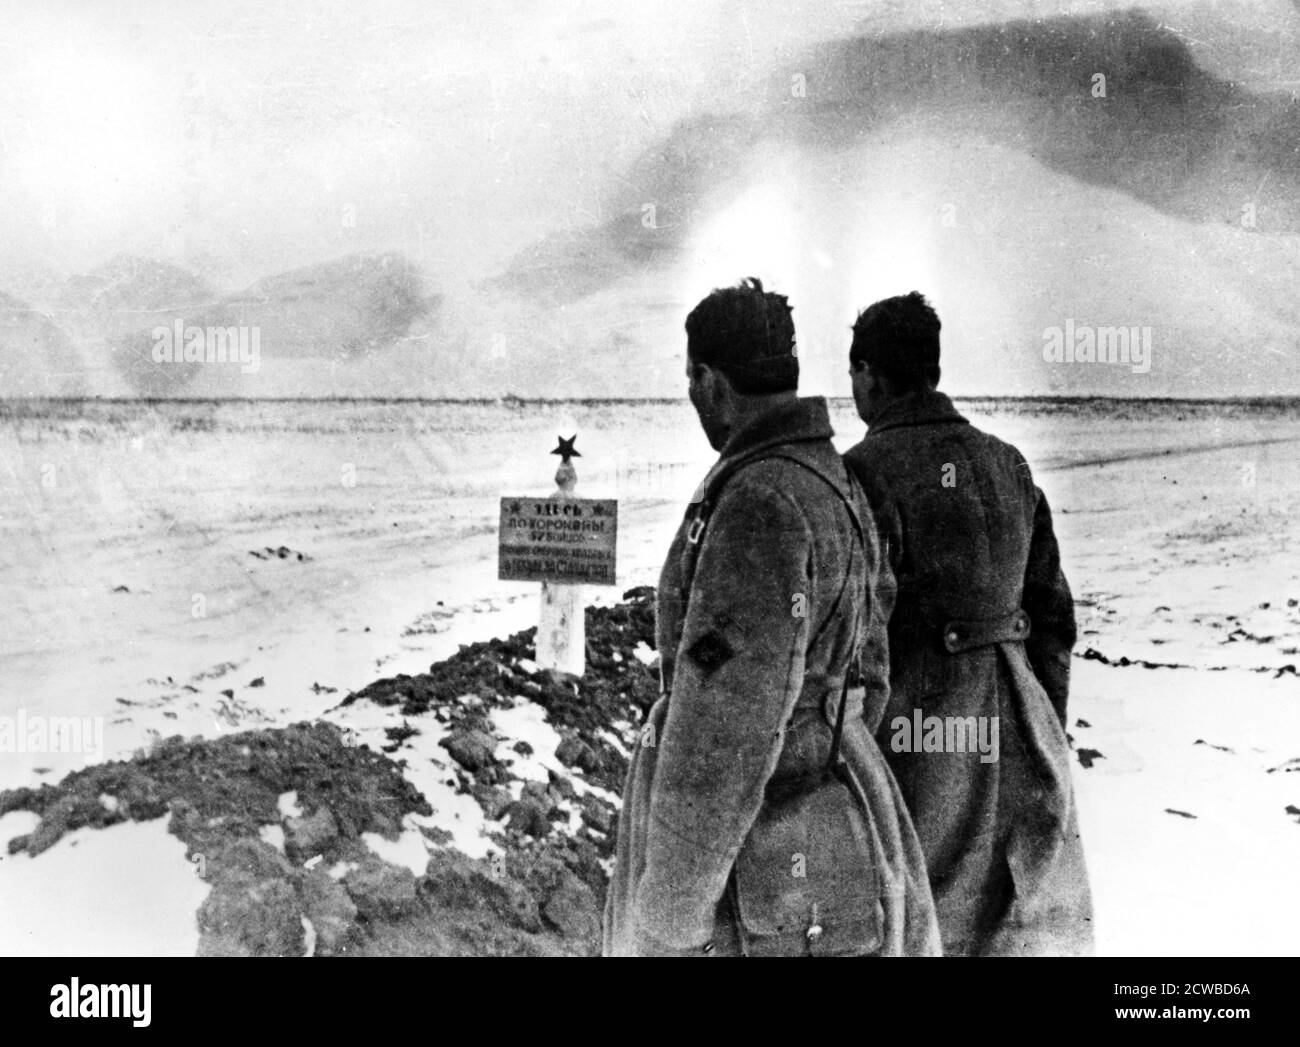 Tomba di massa dei soldati russi, fronte di Stalingrado, Russia, gennaio 1943. Combattuta tra l'agosto 1942 e il febbraio 1943, la battaglia di Stalingrado fu una delle più sanguinose della storia, 750,000 soldati russi furono uccisi, feriti o catturati e più di 40,000 civili morirono. Sul lato dell'asse, 740,000 sono stati uccisi o feriti e 110,000 sono stati detenuti. La sconfitta a Stalingrado fu un'inversione da cui la Germania nazista alla fine non fu in grado di riprendersi. Il fotografo è sconosciuto. Foto Stock